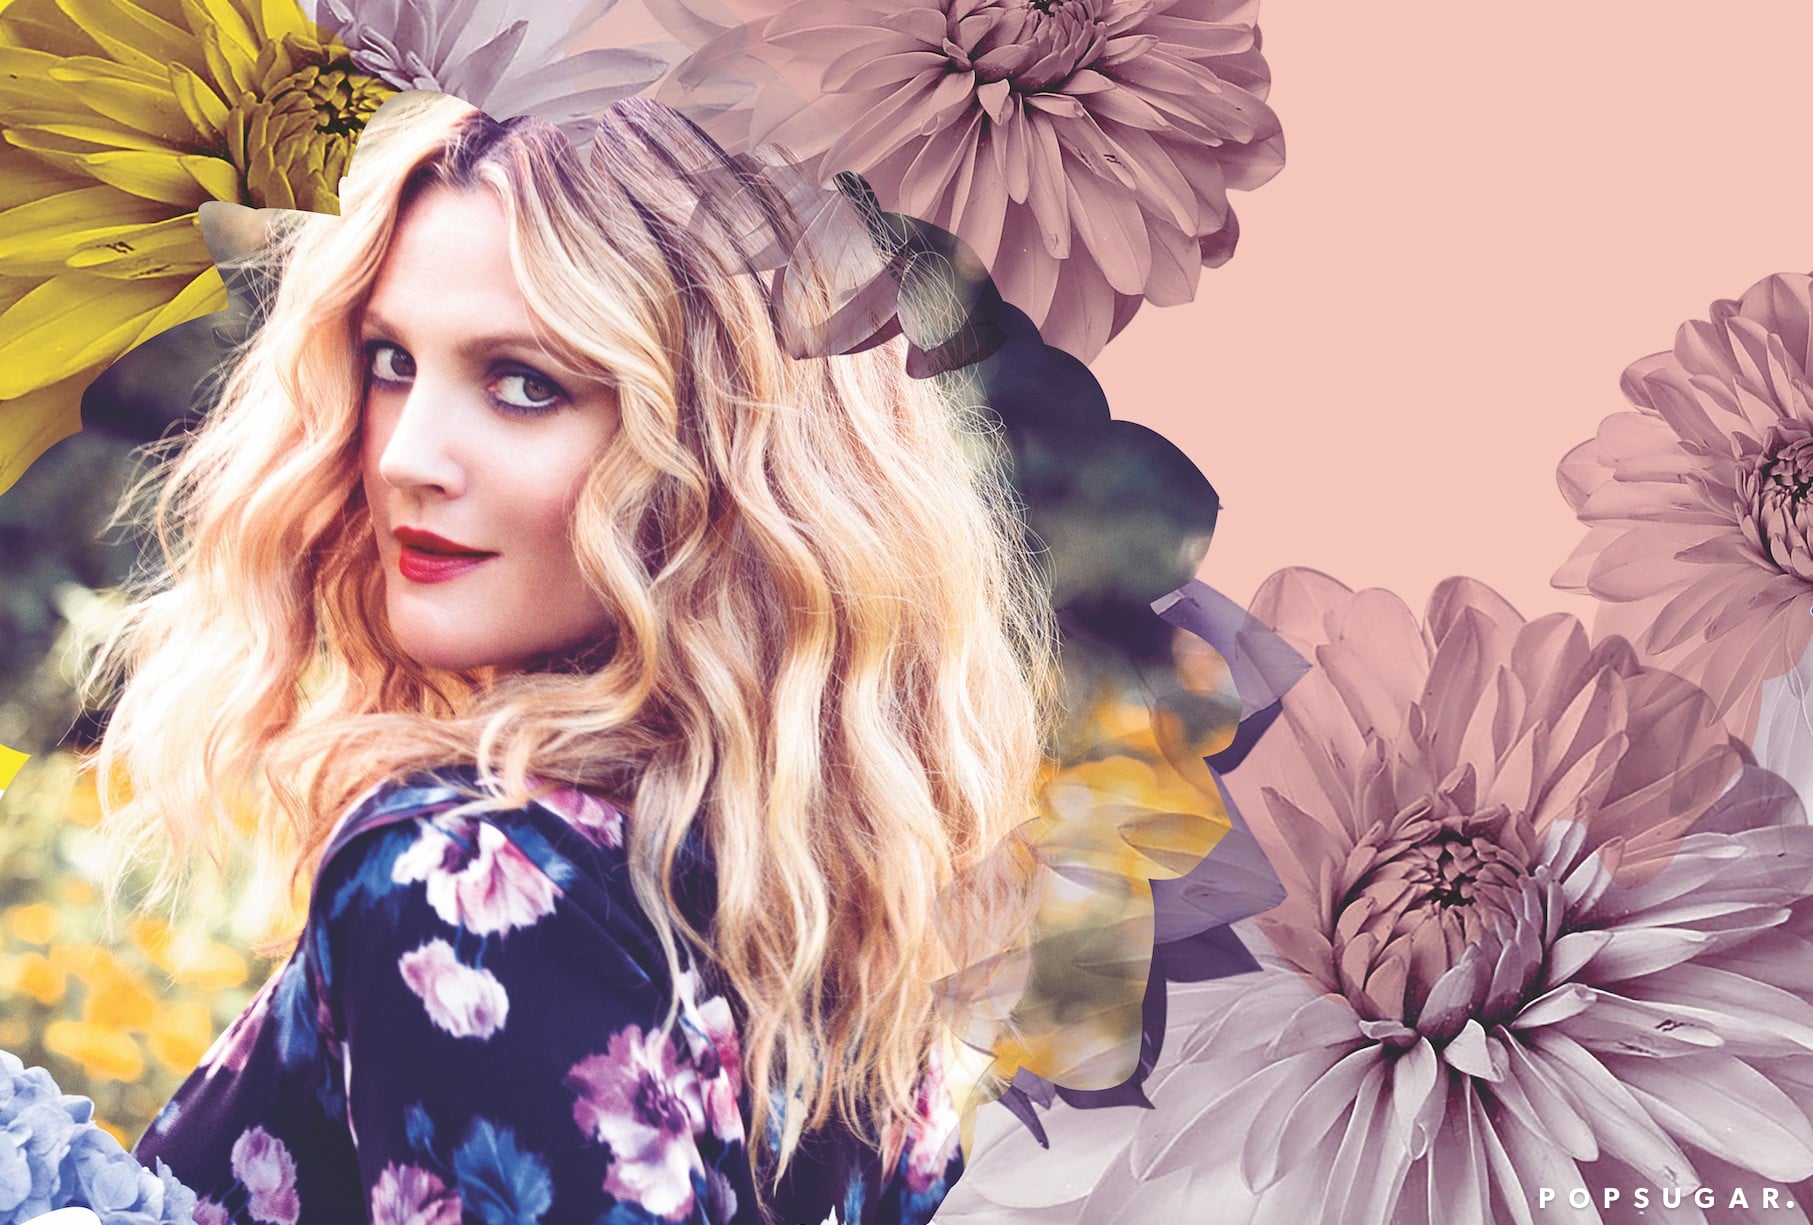 Drew Barrymore's cruelty-free Flower Beauty cosmetics now in Australia